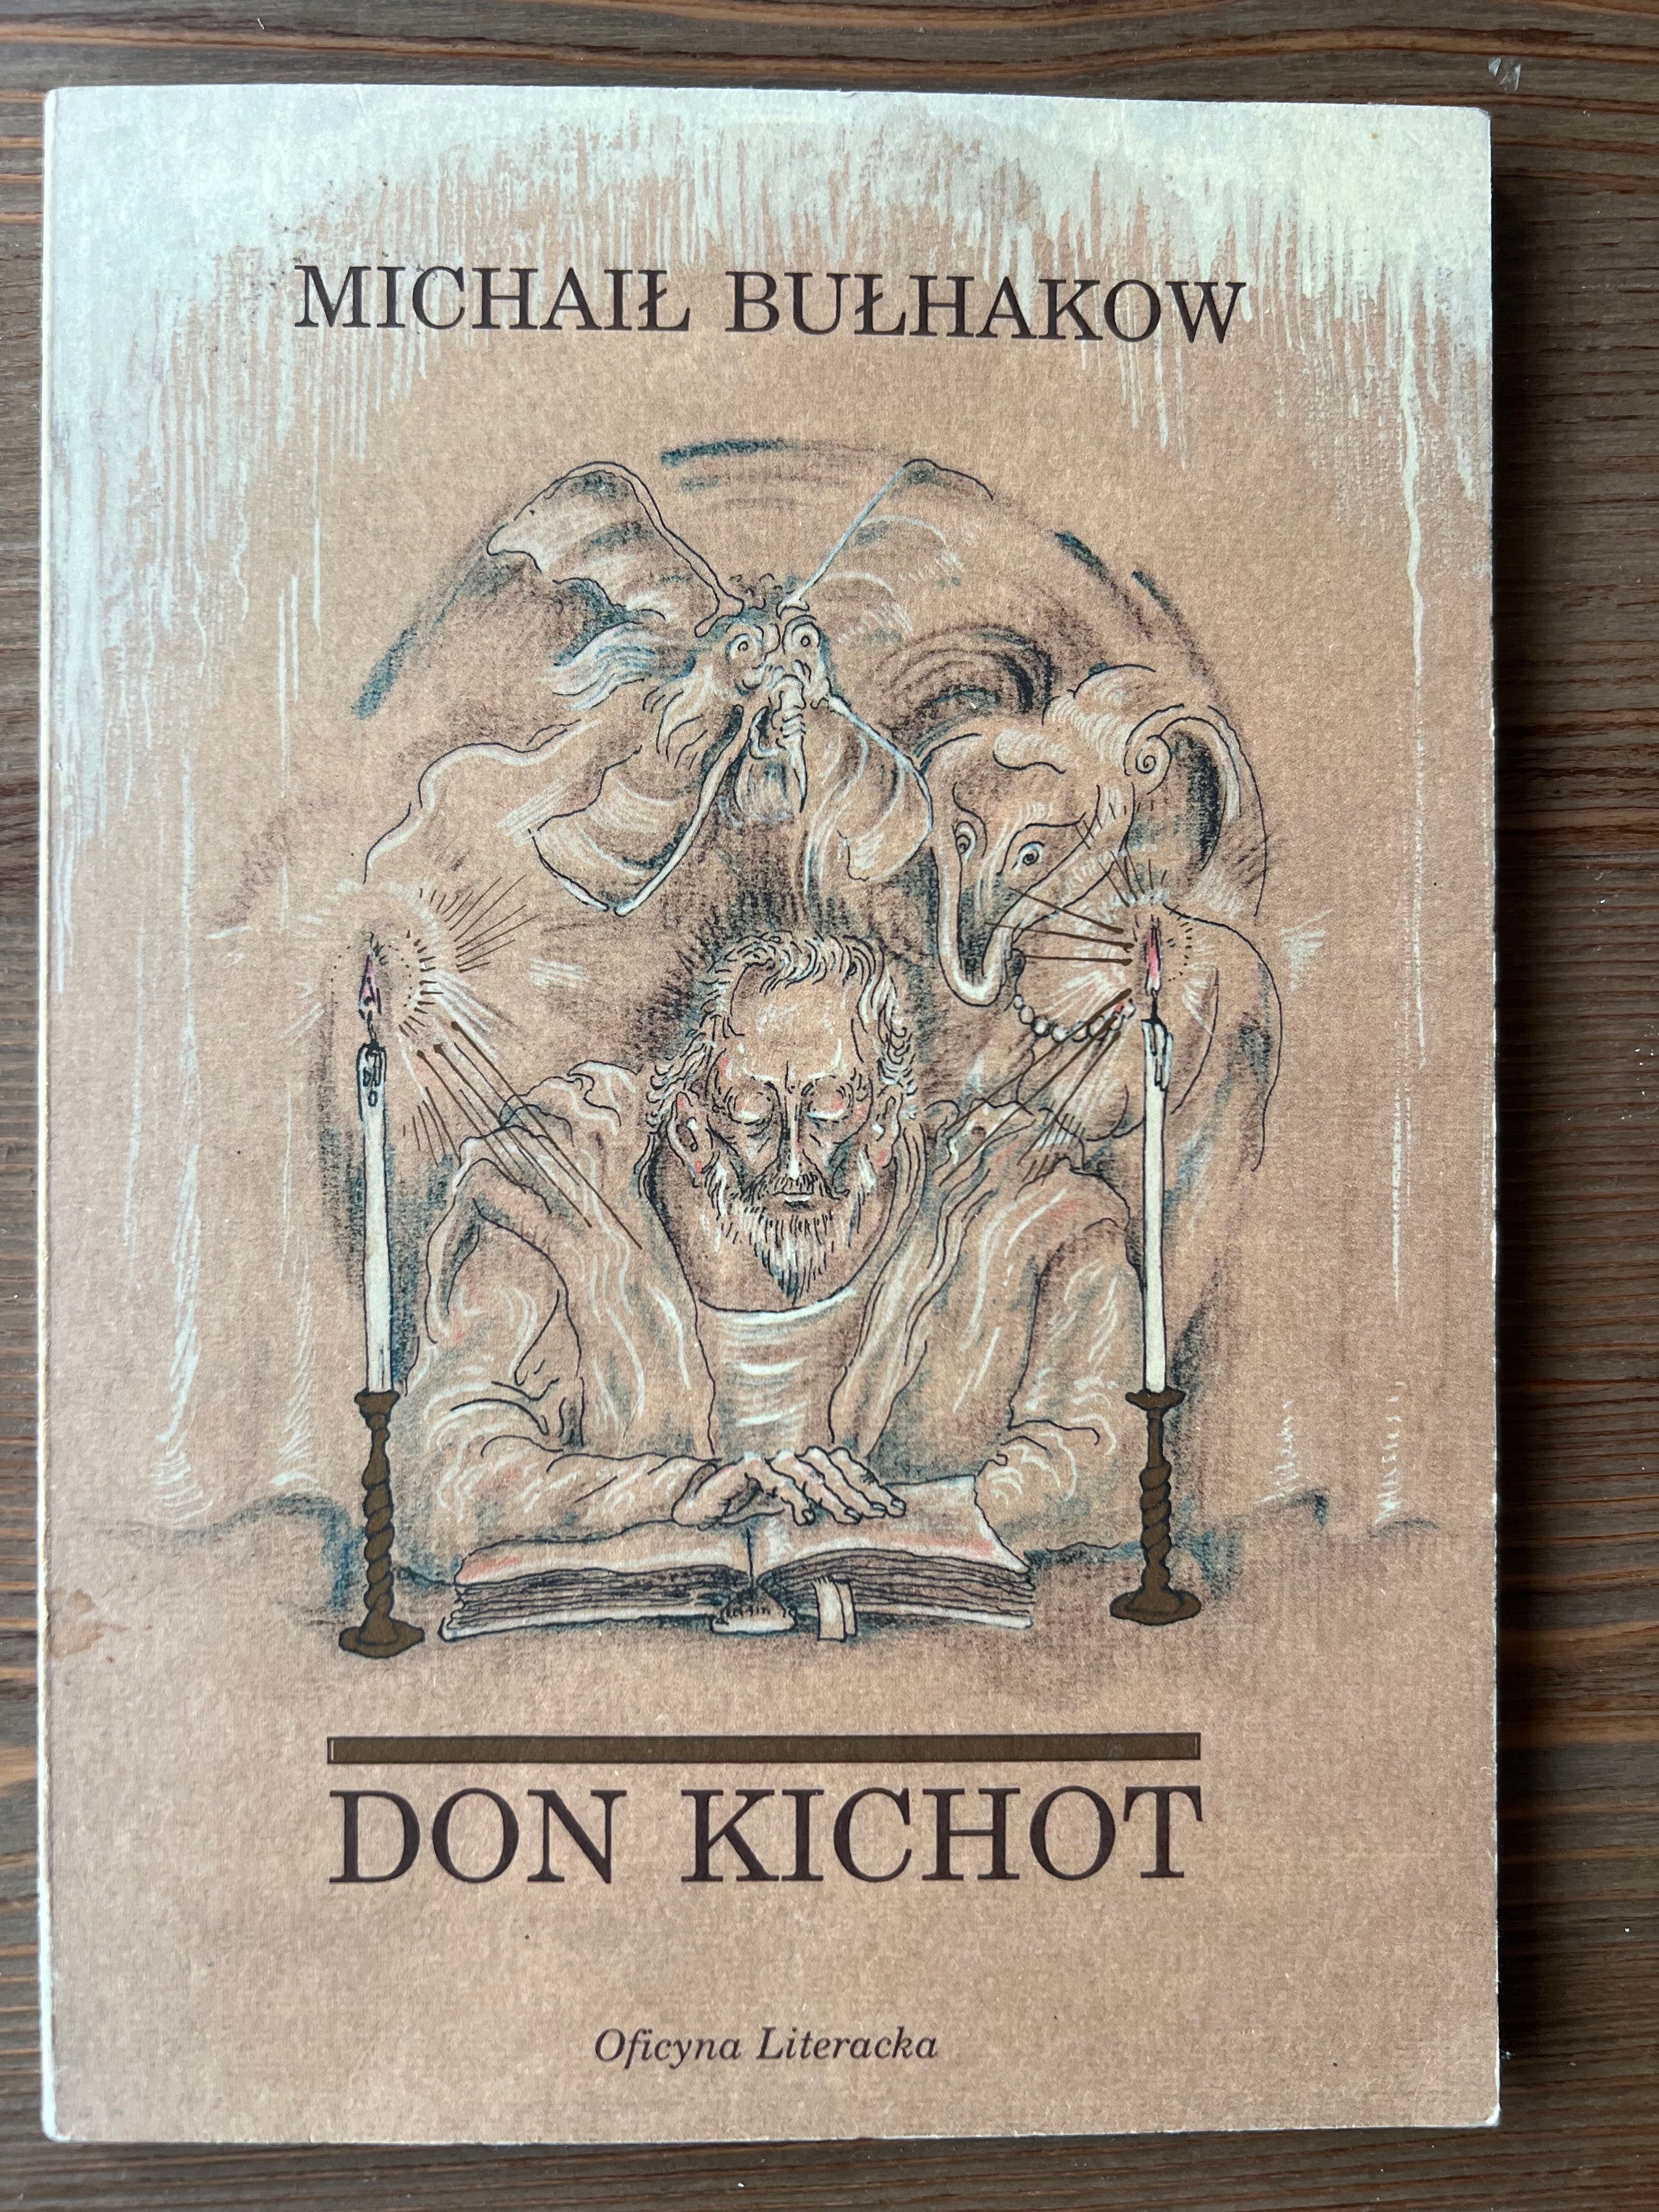 Michaił Bułhakow, Don Kichot